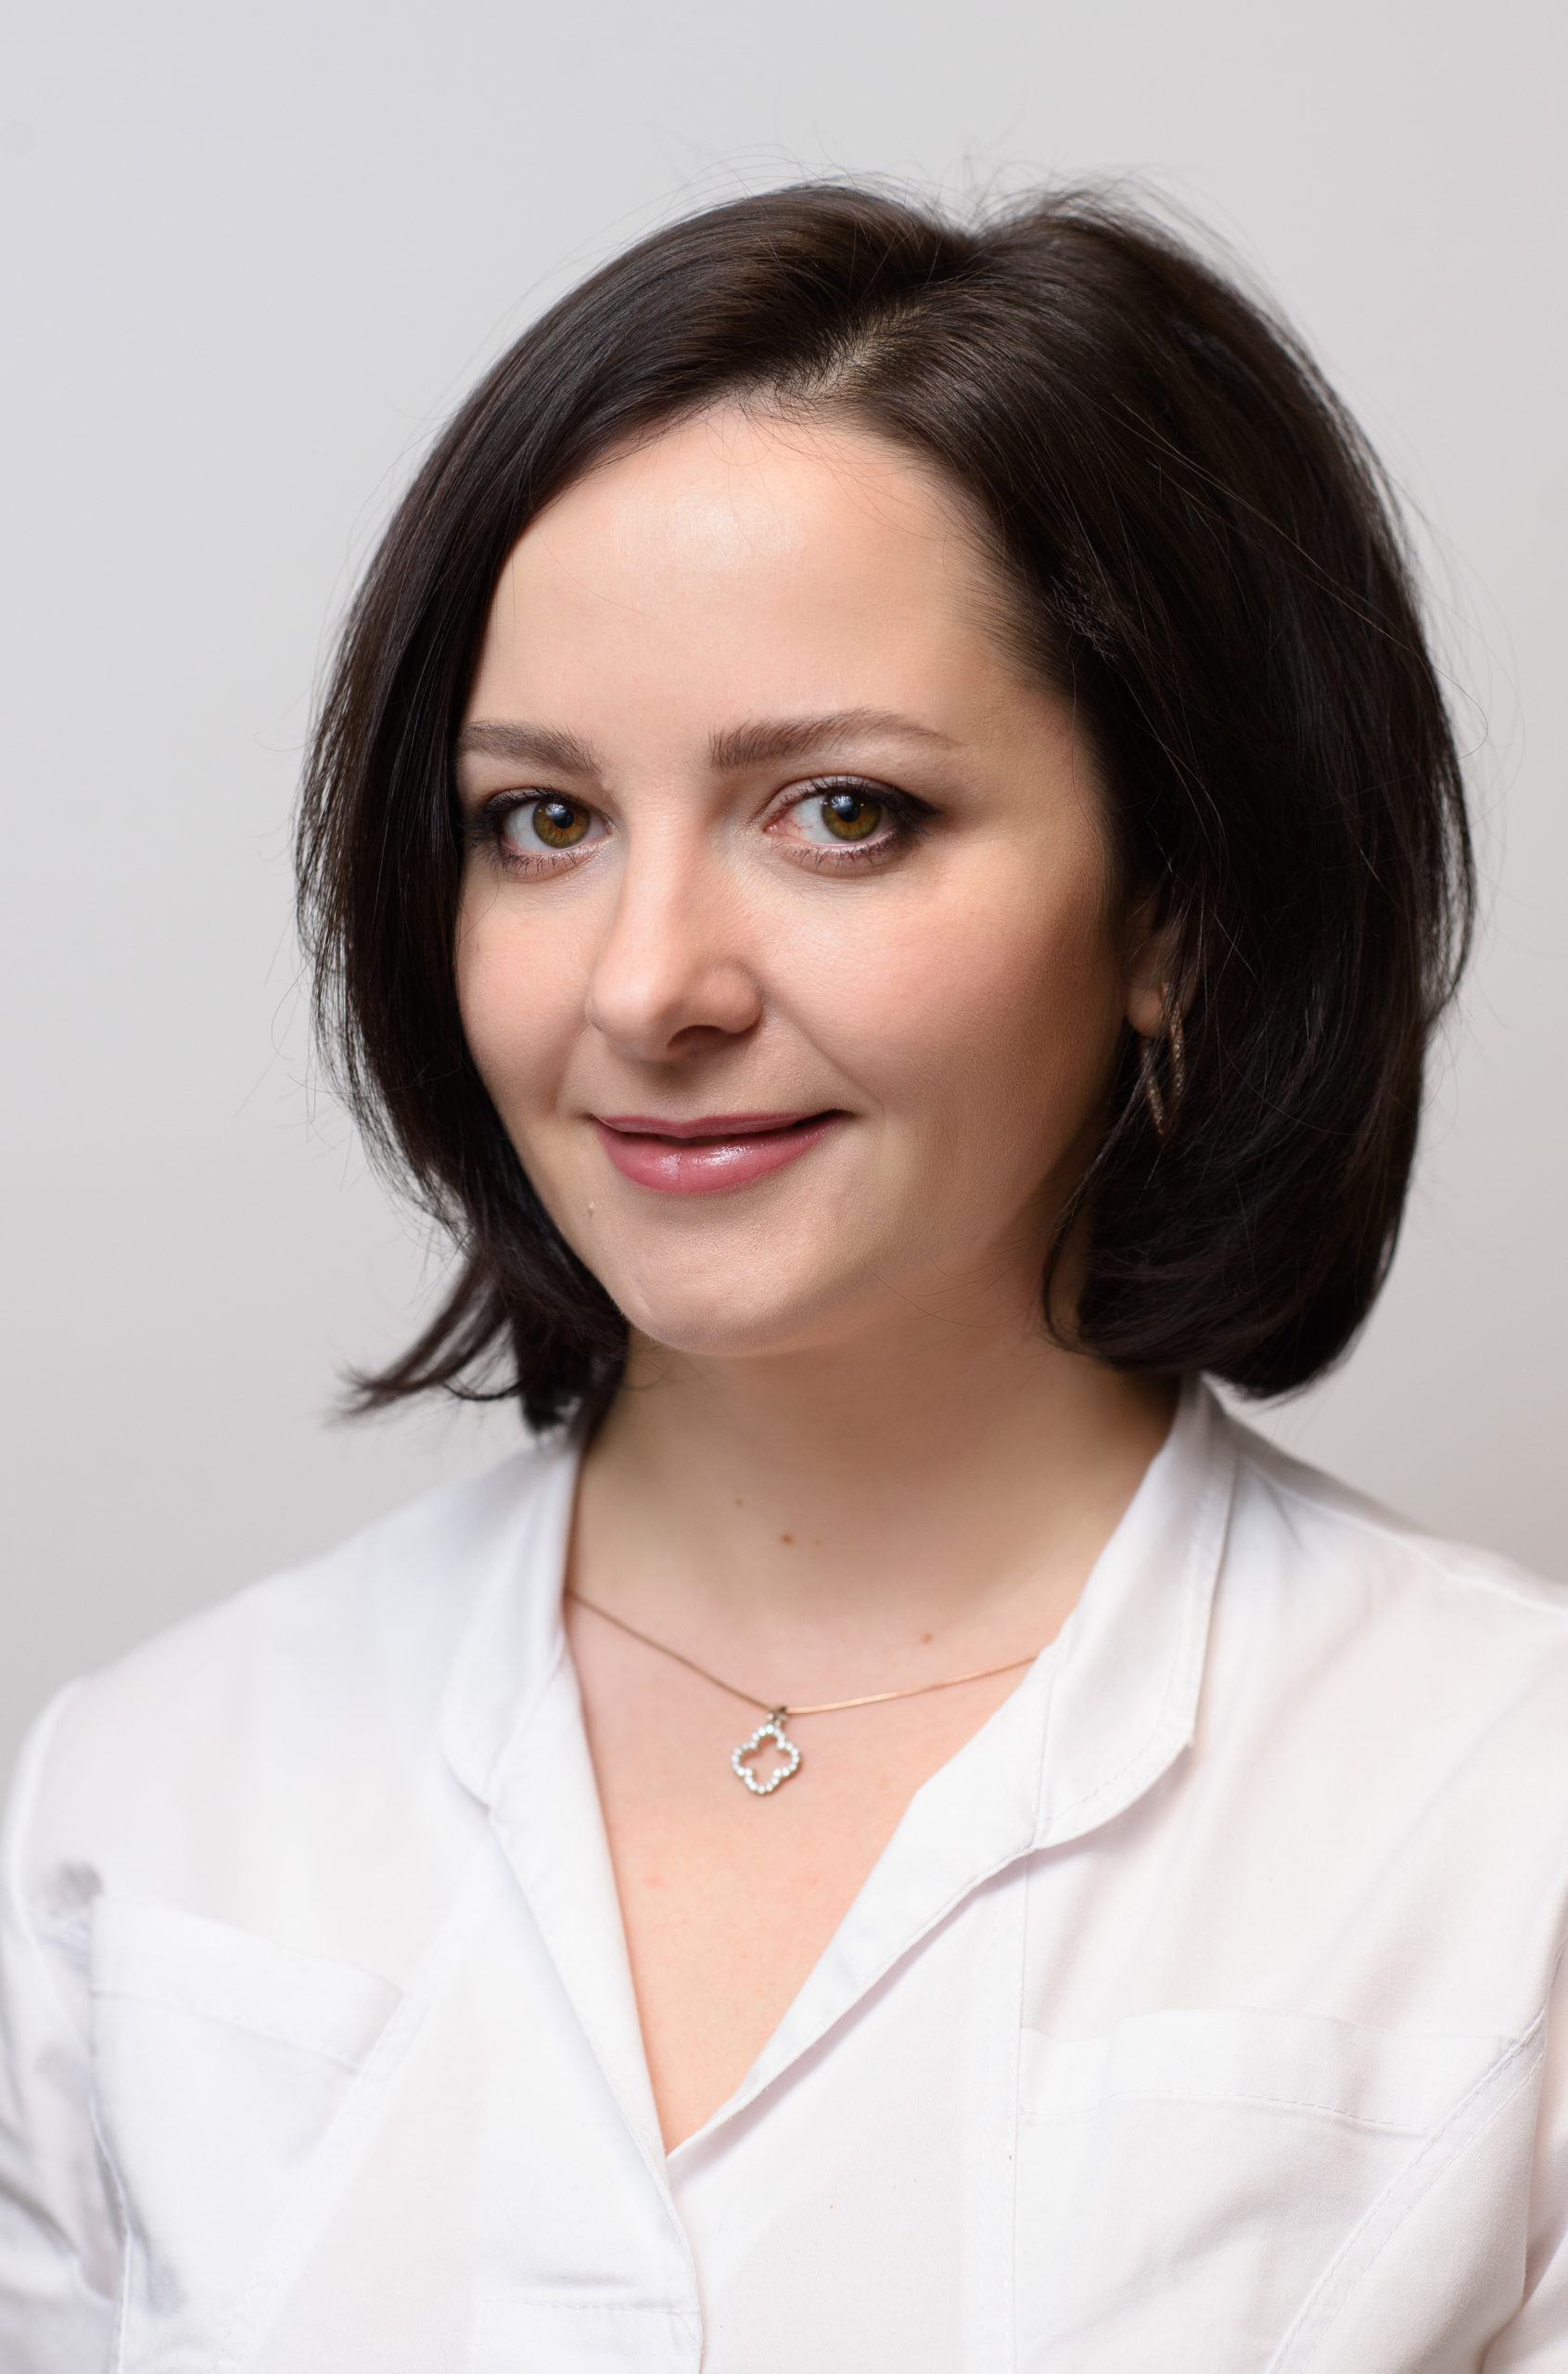 Тирская Екатерина Николаевна, врач-акушер-гинеколог, врач ультразвуковой диагностики, специалист по эстетической гинекологии